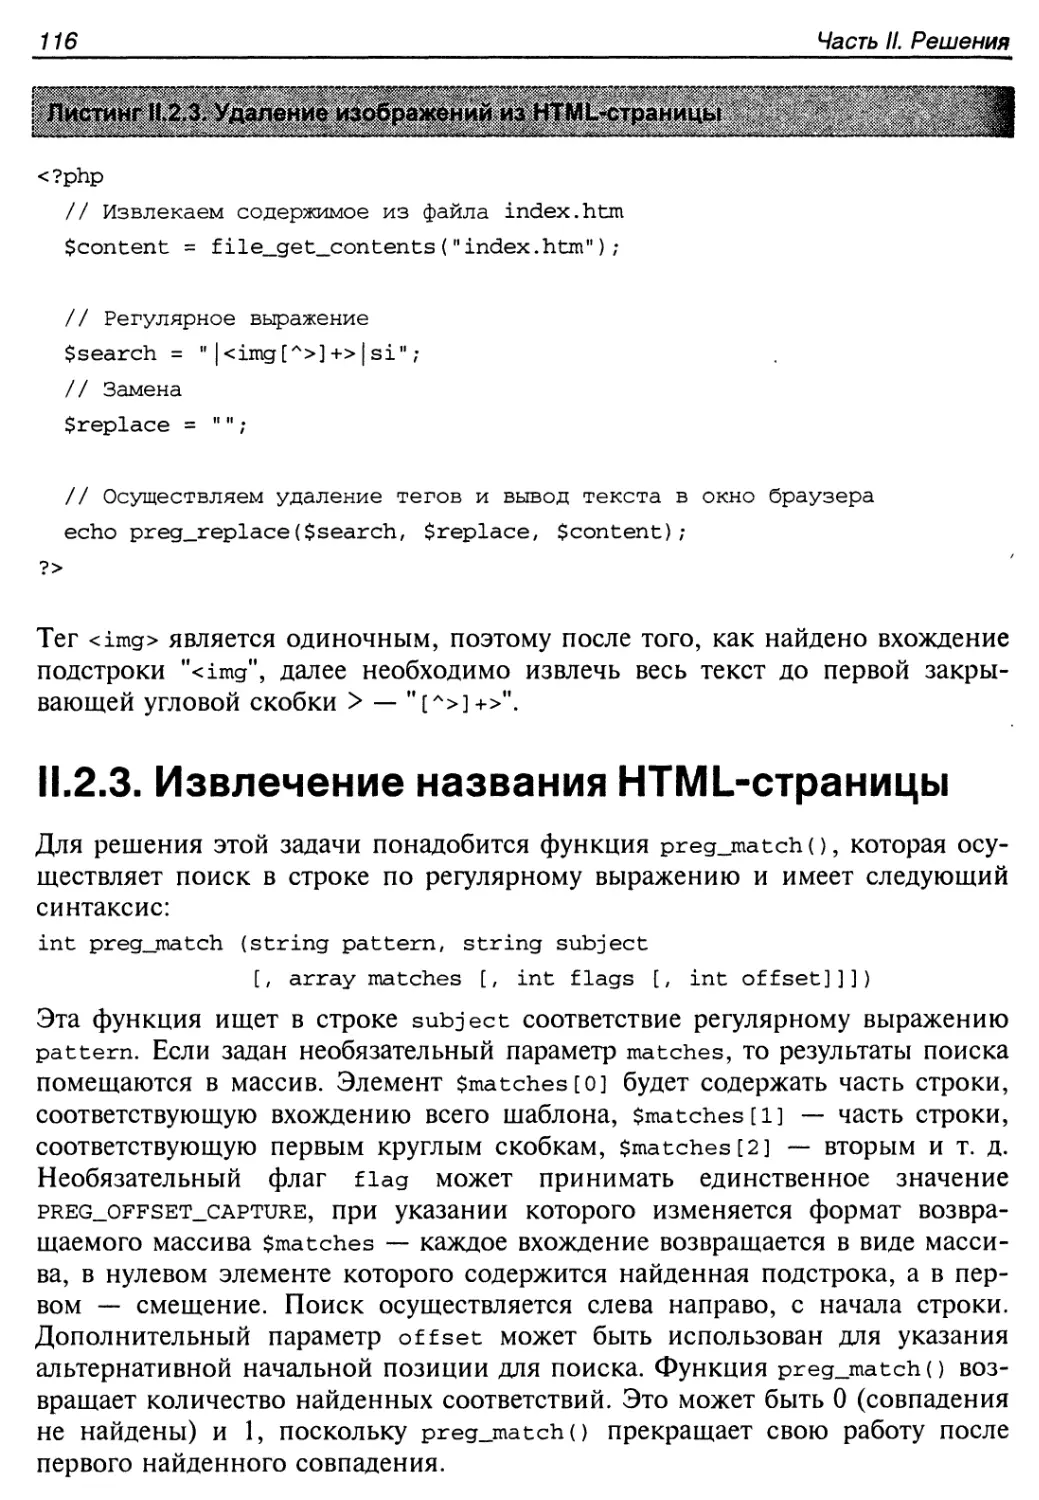 II.2.3. Извлечение названия HTML-страницы